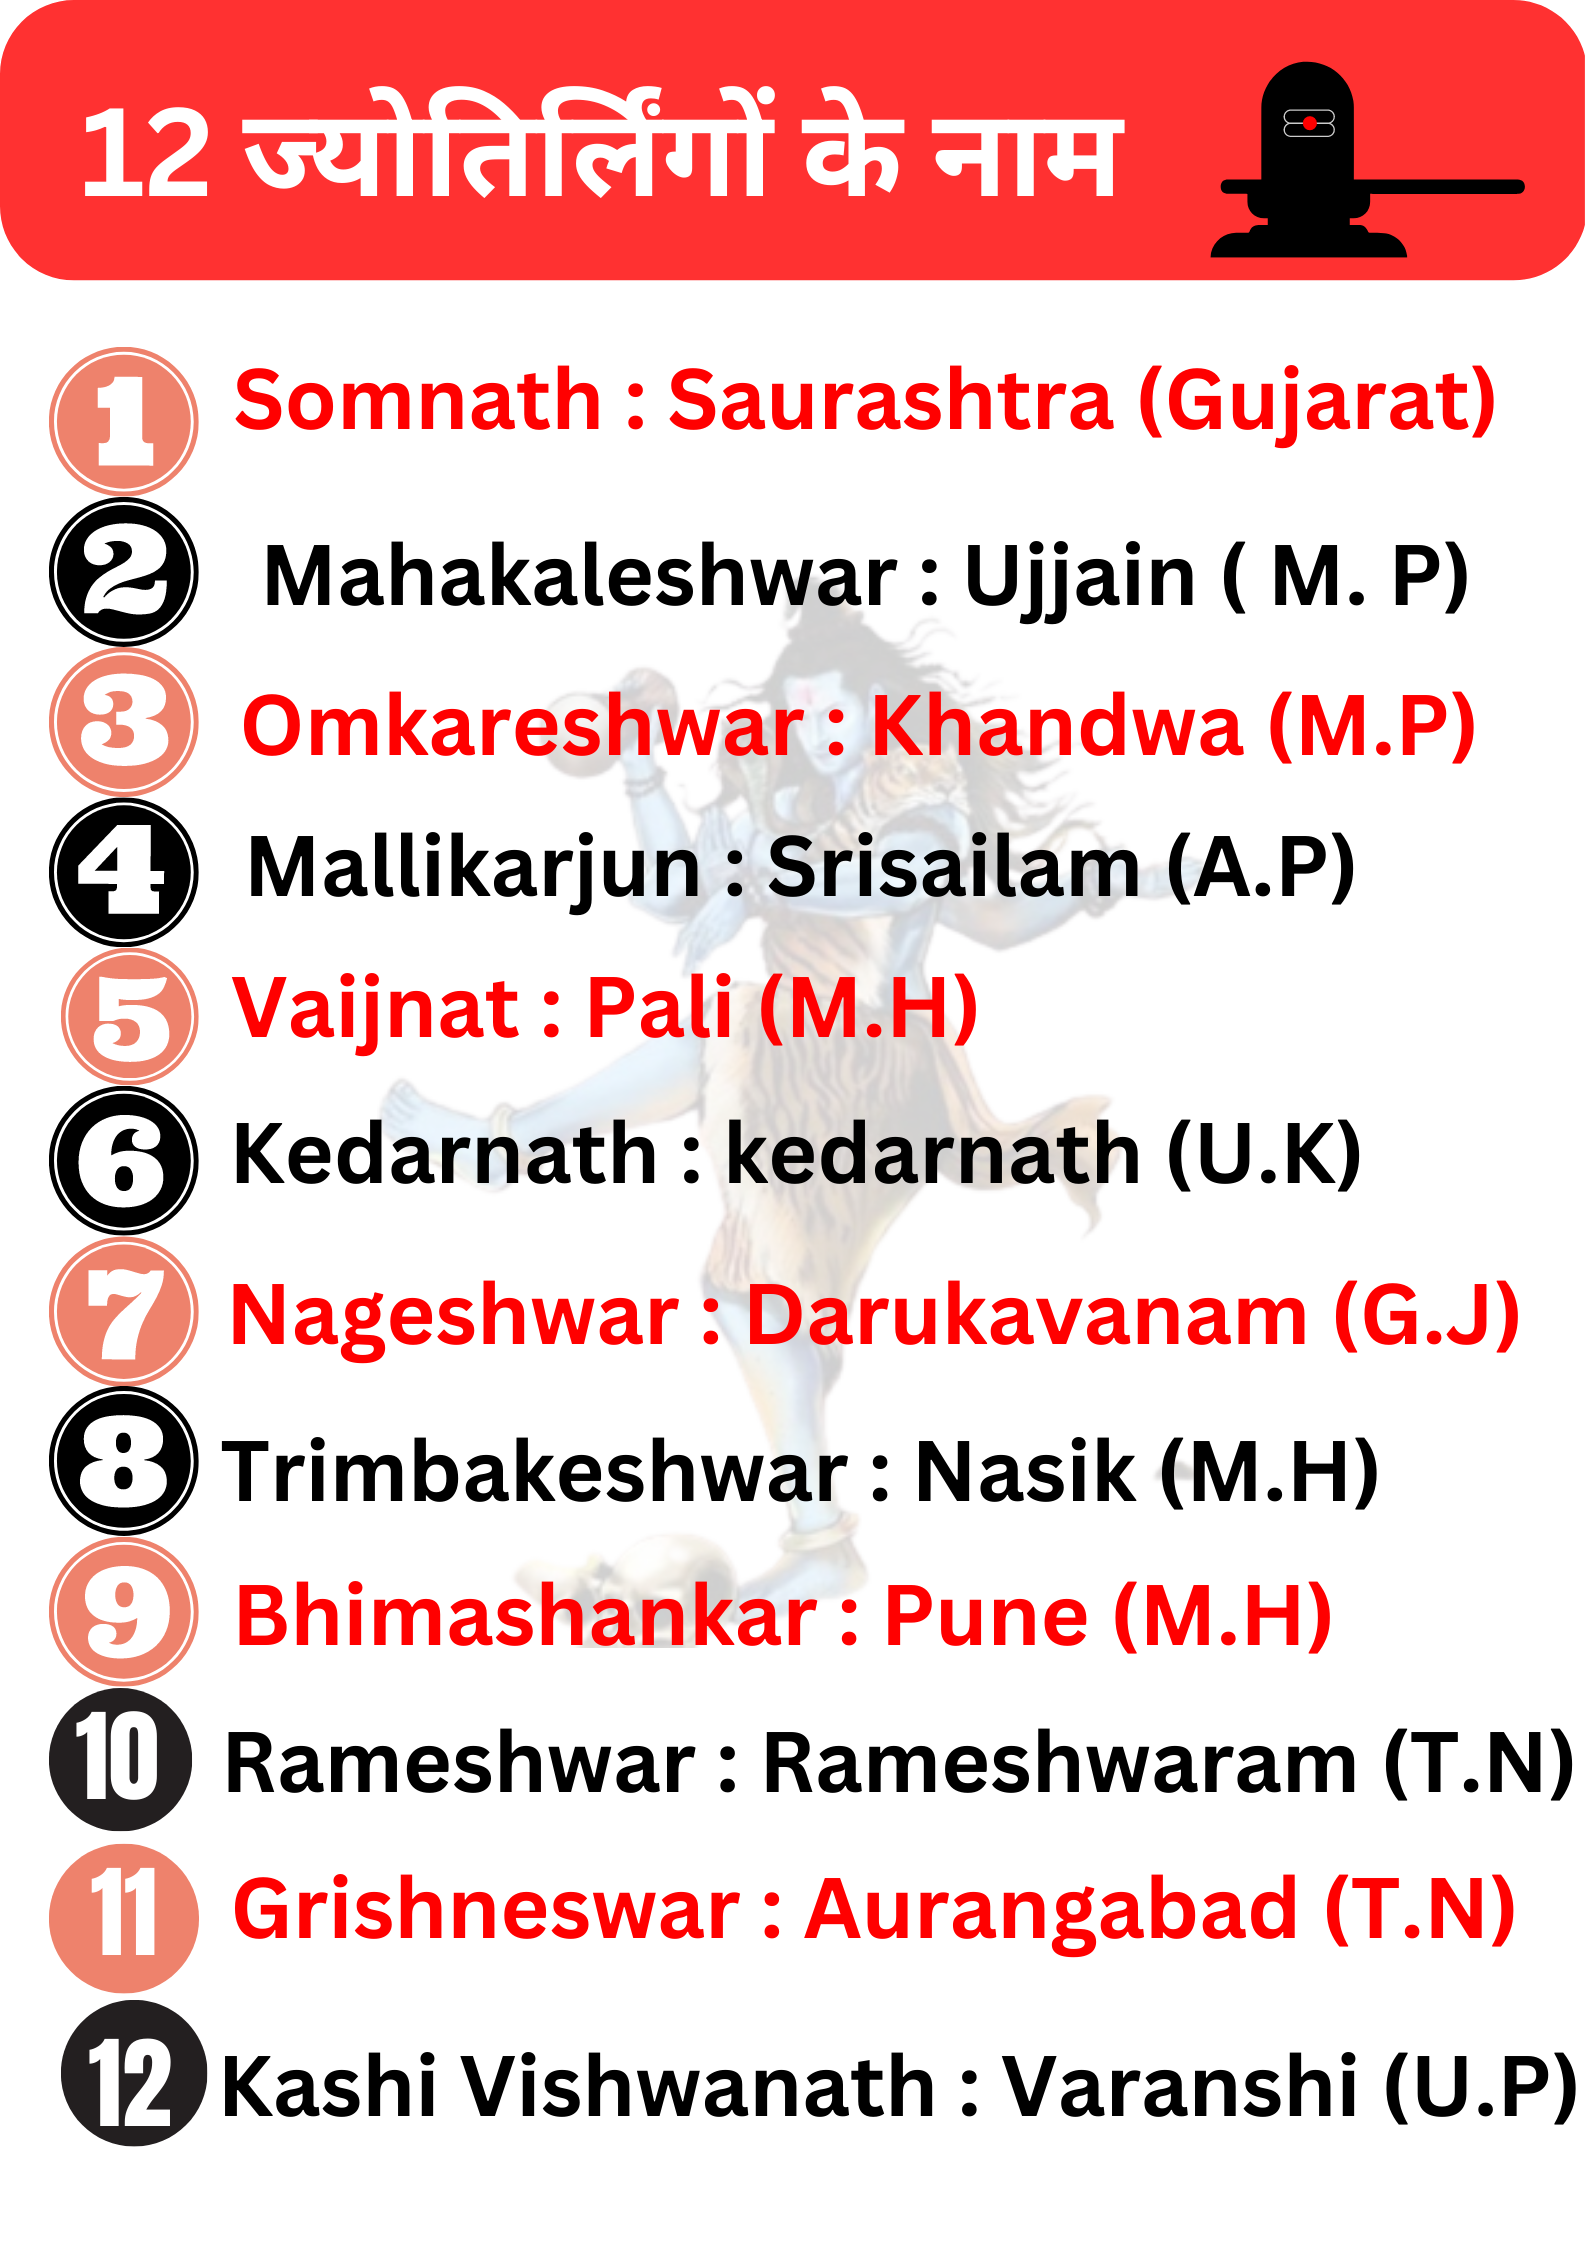 12 ज्योतिर्लिंगों के नाम और स्थान: jyotirlinga in India with place